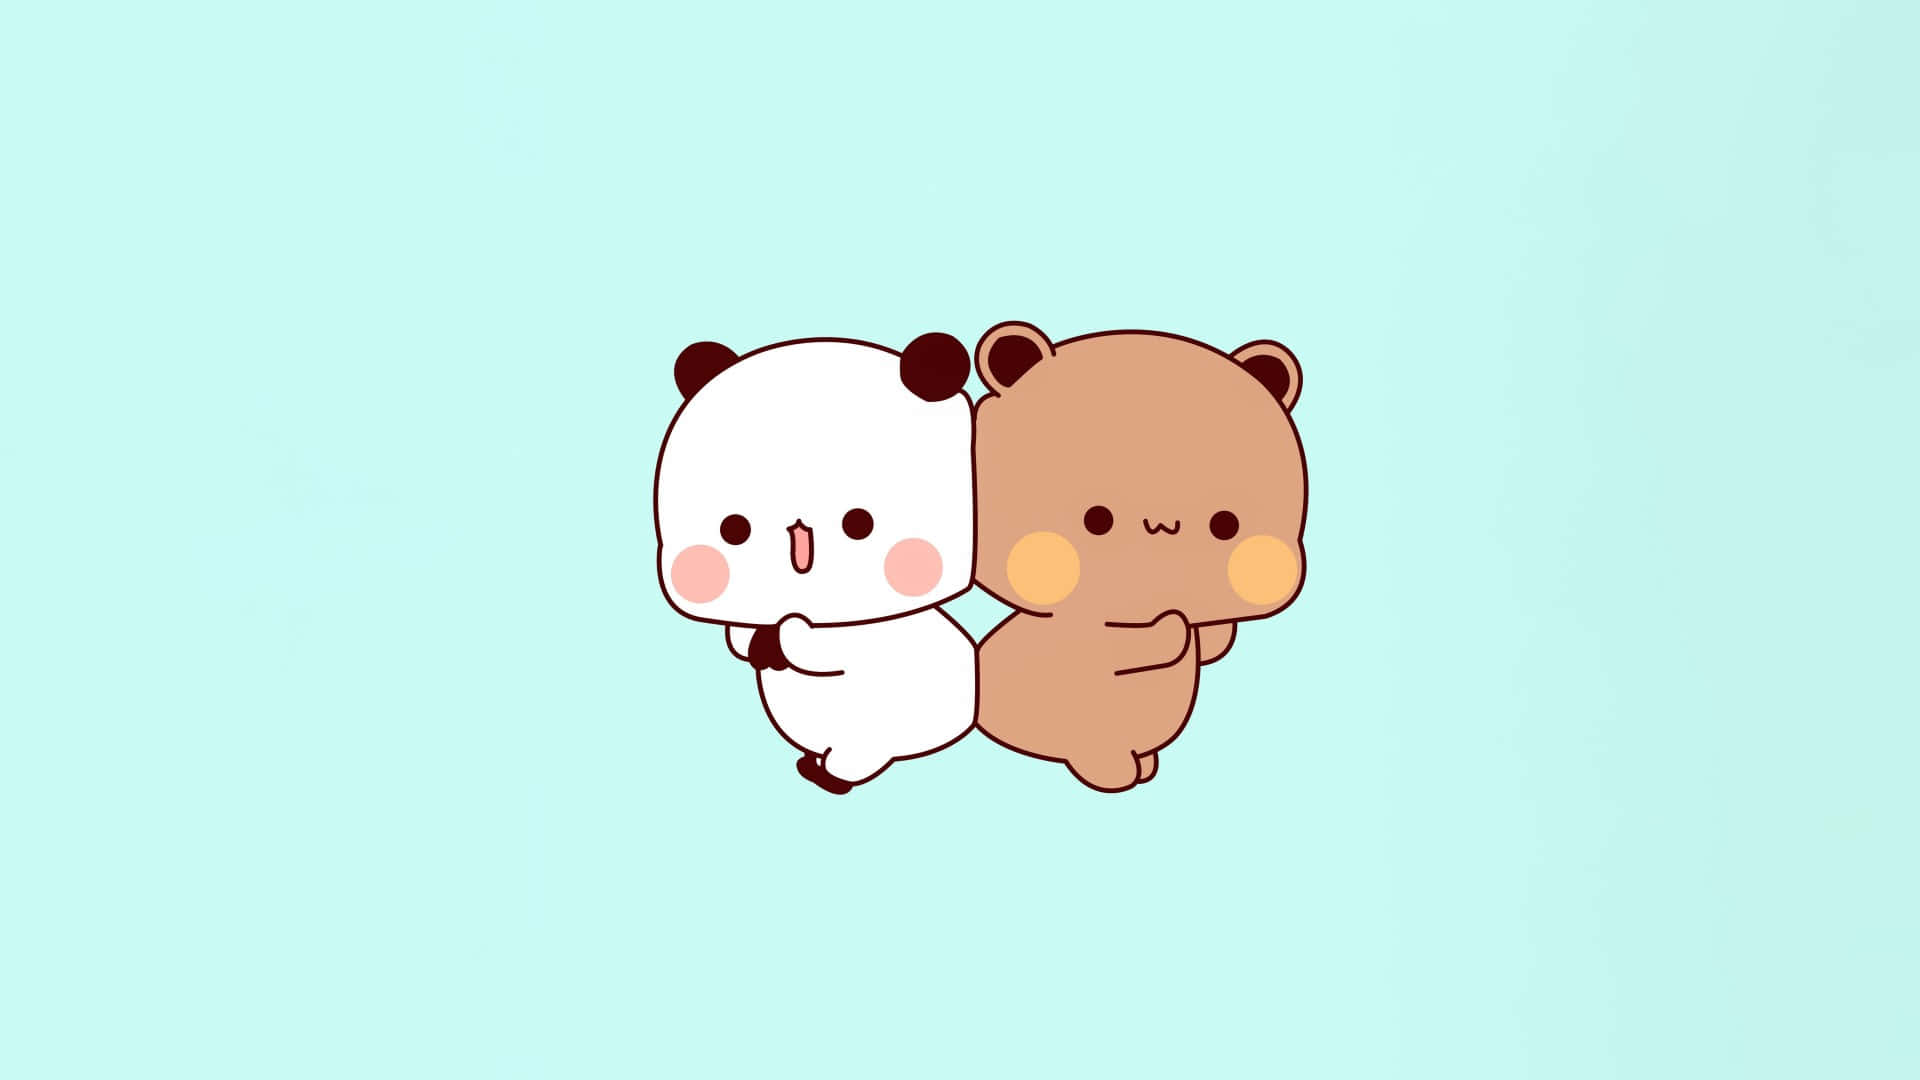 Adorable Pandaand Bear Cartoon Friends Wallpaper